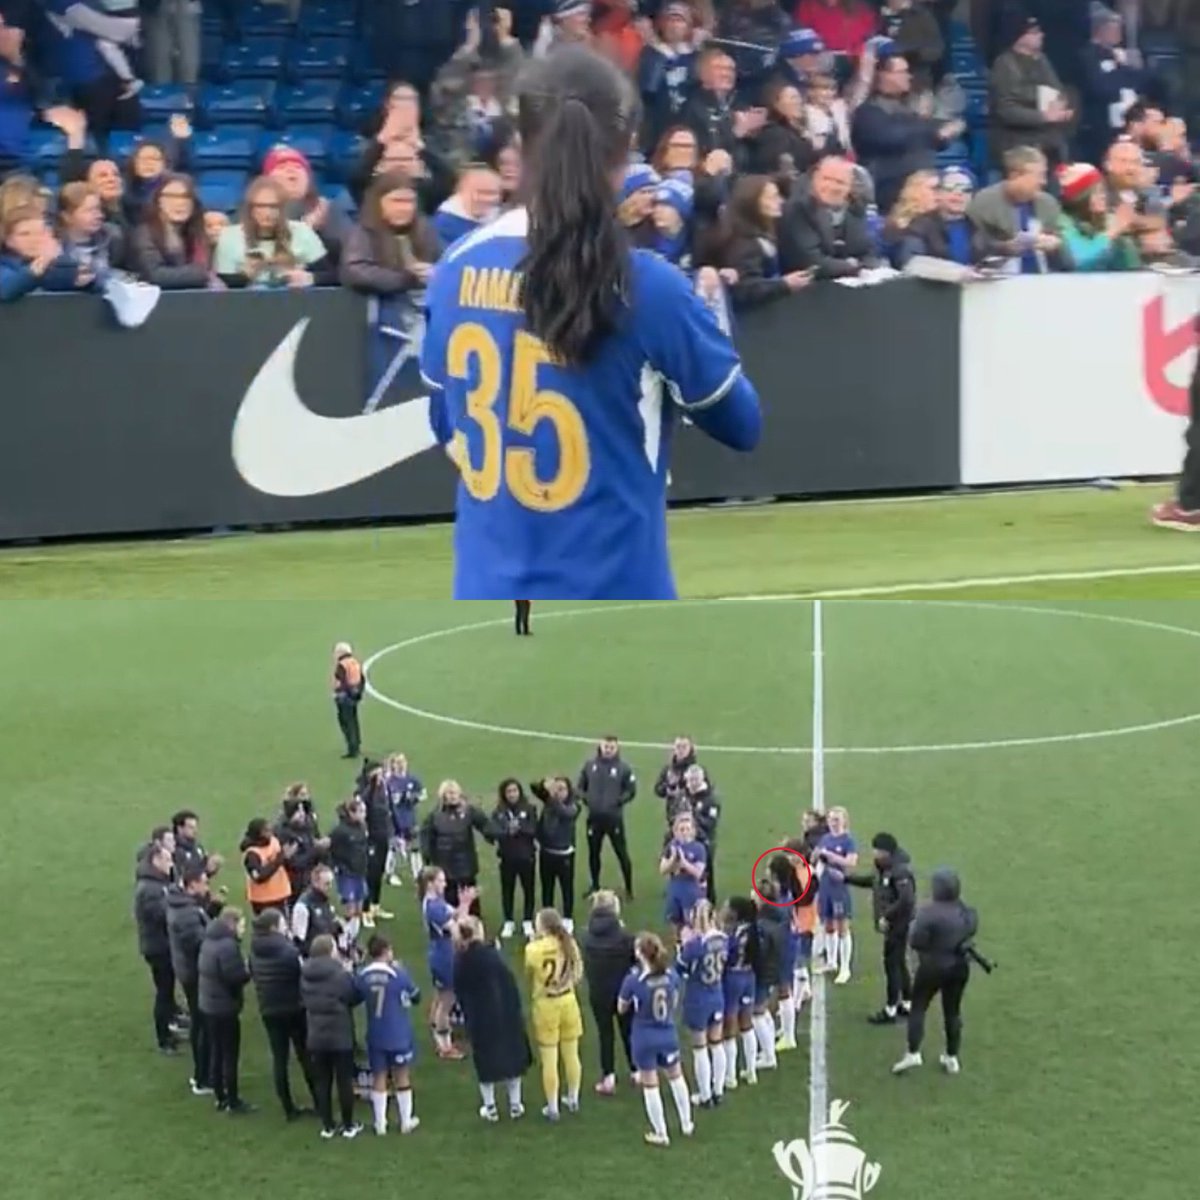 Termina el partido. Las futbolistas del Chelsea, en círculo, aplauden a Mayra Ramírez tras su golazo de taco, con el que el Chelsea venció al Palace y avanzó en la FA Cup. Luego, Mayra saluda al público, mientras las tribunas le cantan, con el ritmo de Bella Ciao: 'Her name is…